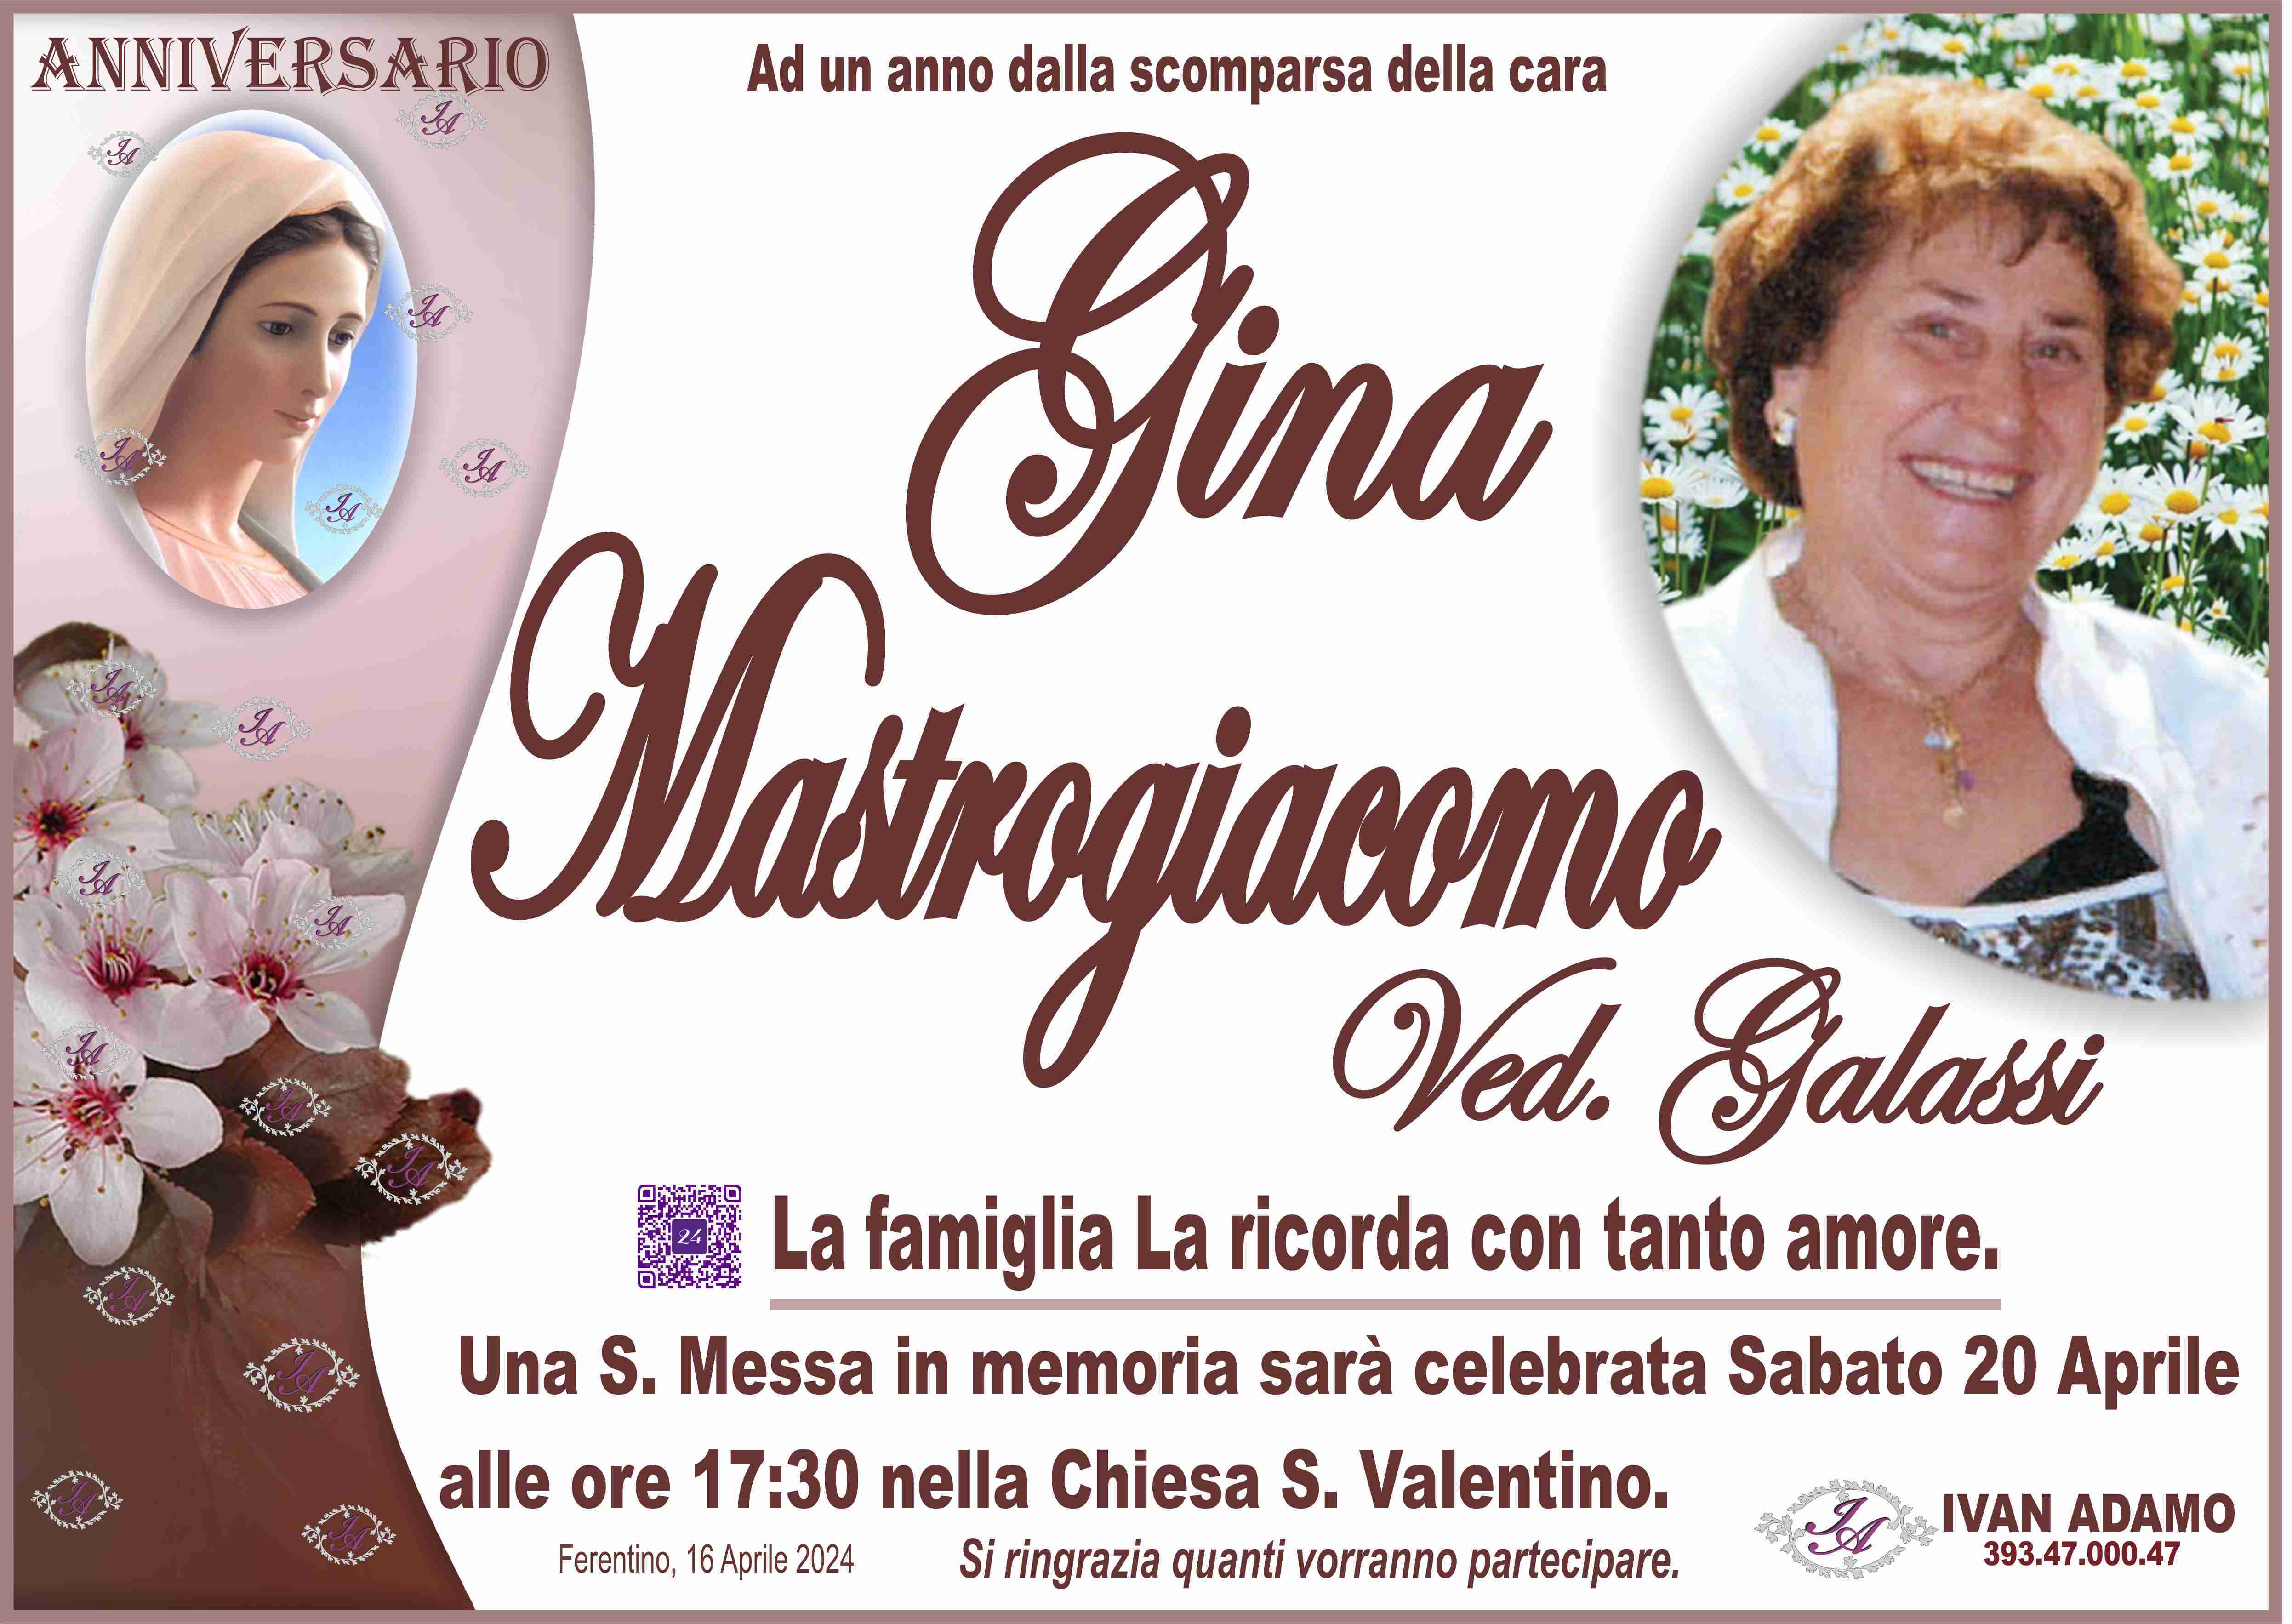 Gina Mastrogiacomo